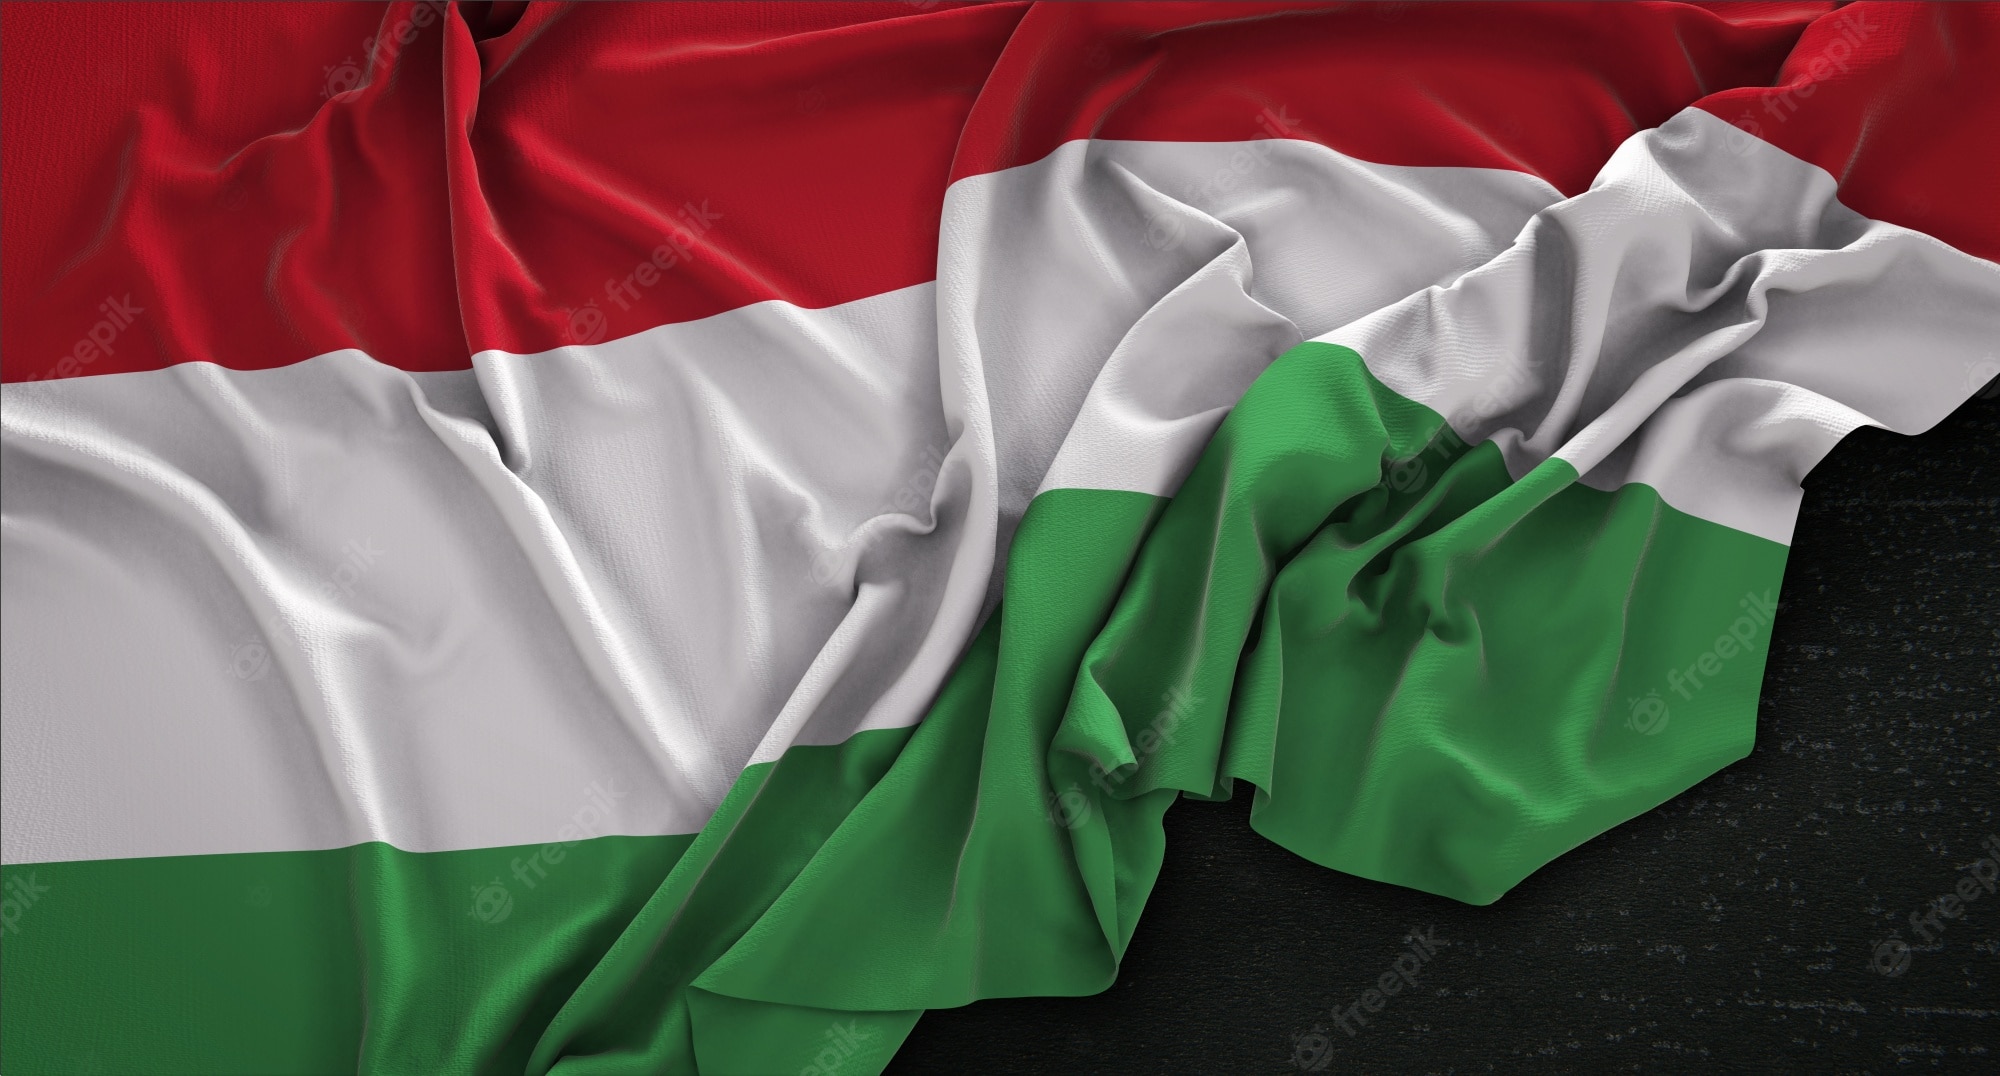 Hungary Flag Wallpapers